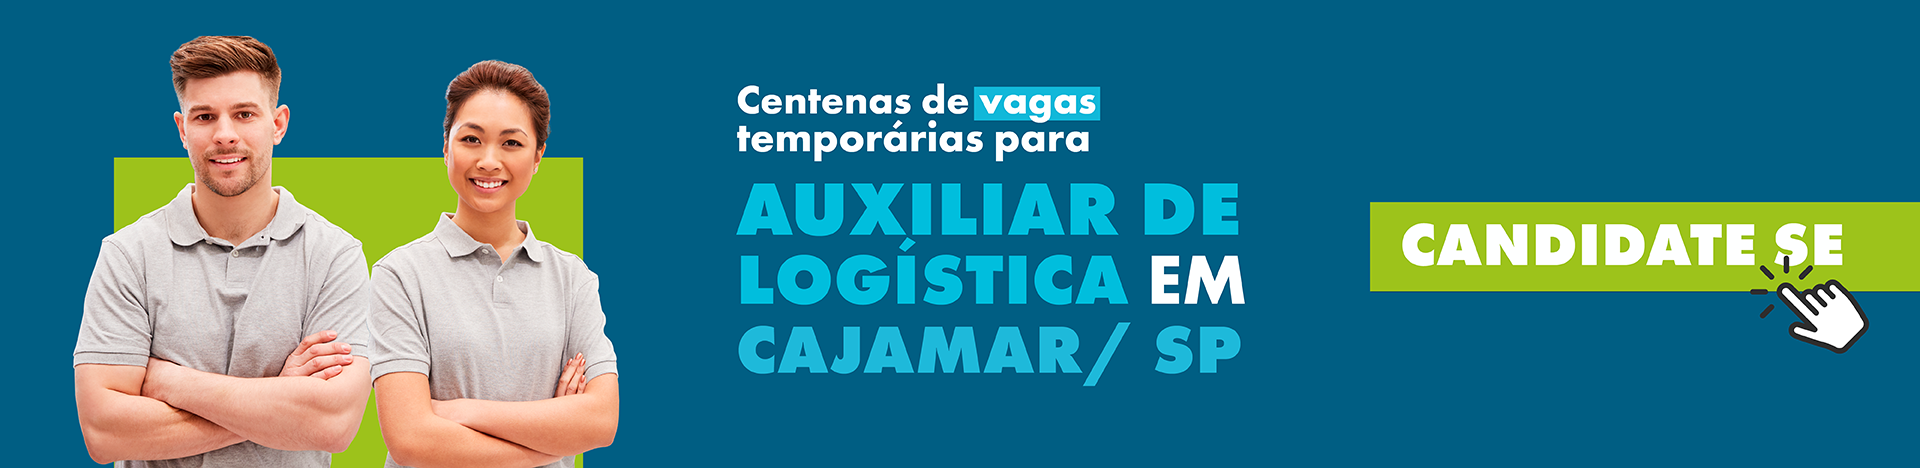 Auxiliar de Logistica Cajamar